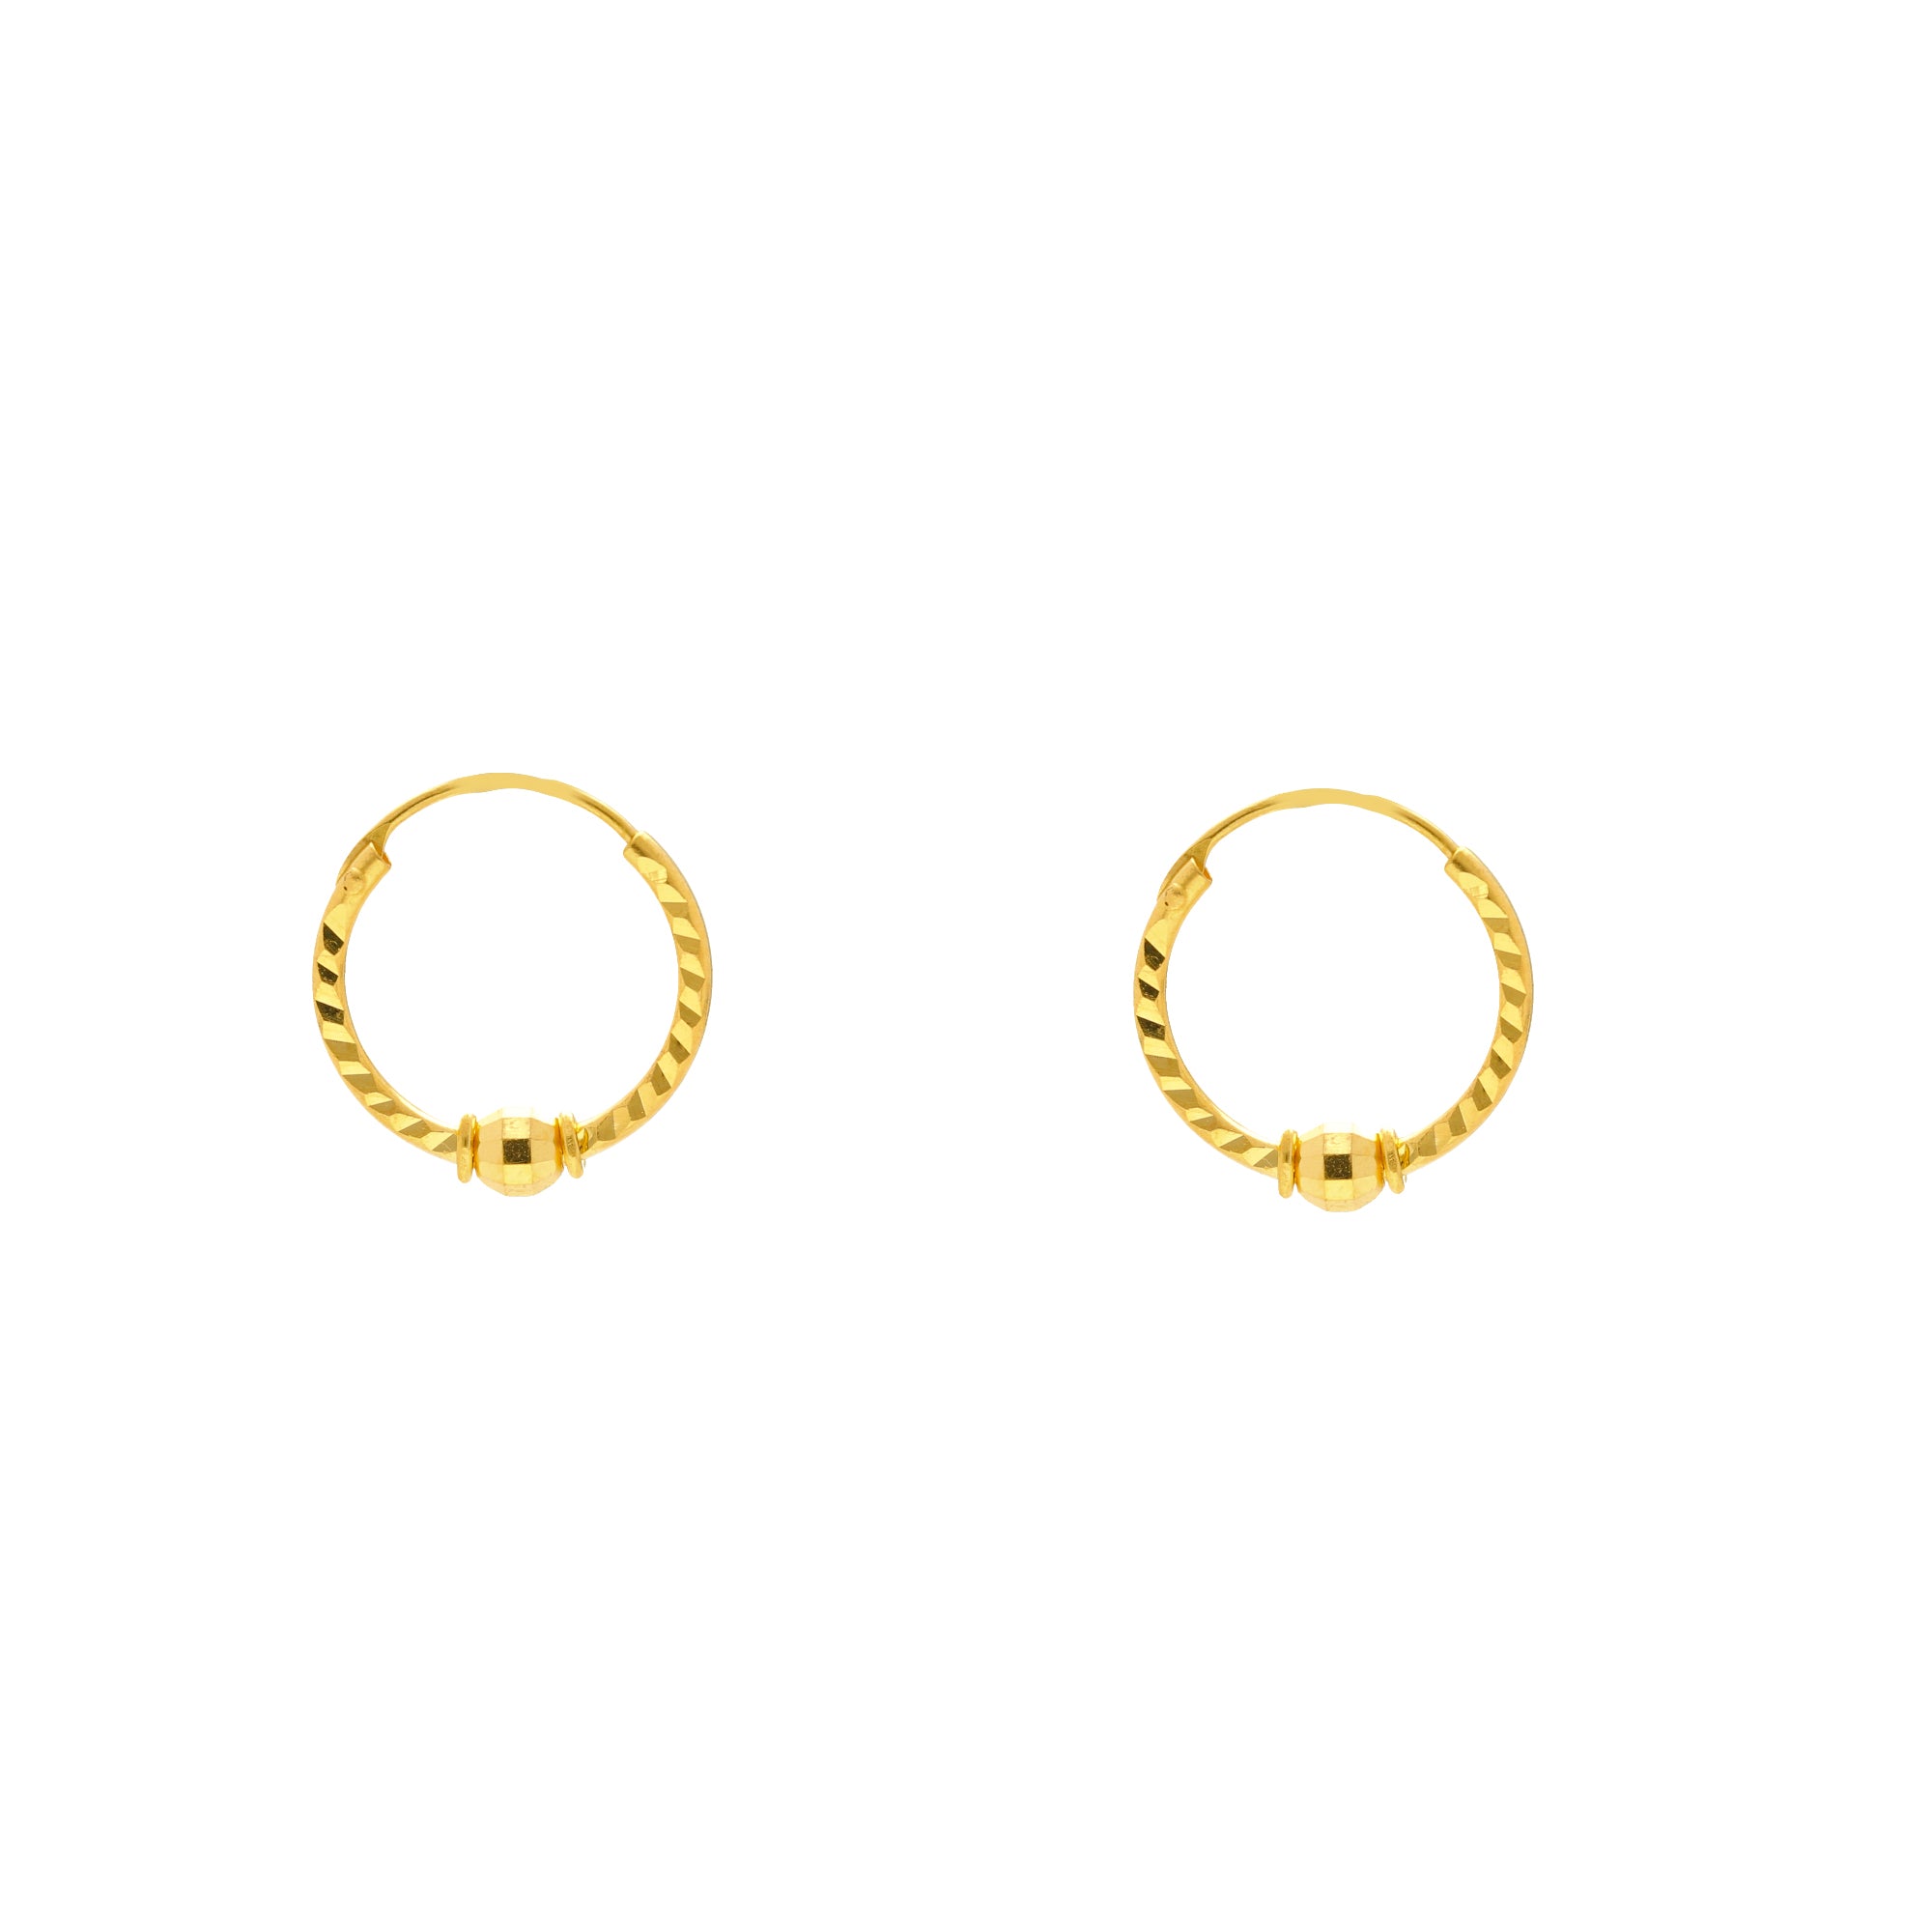 22K Yellow Gold Beaded Hoop Earrings w/ Engravings